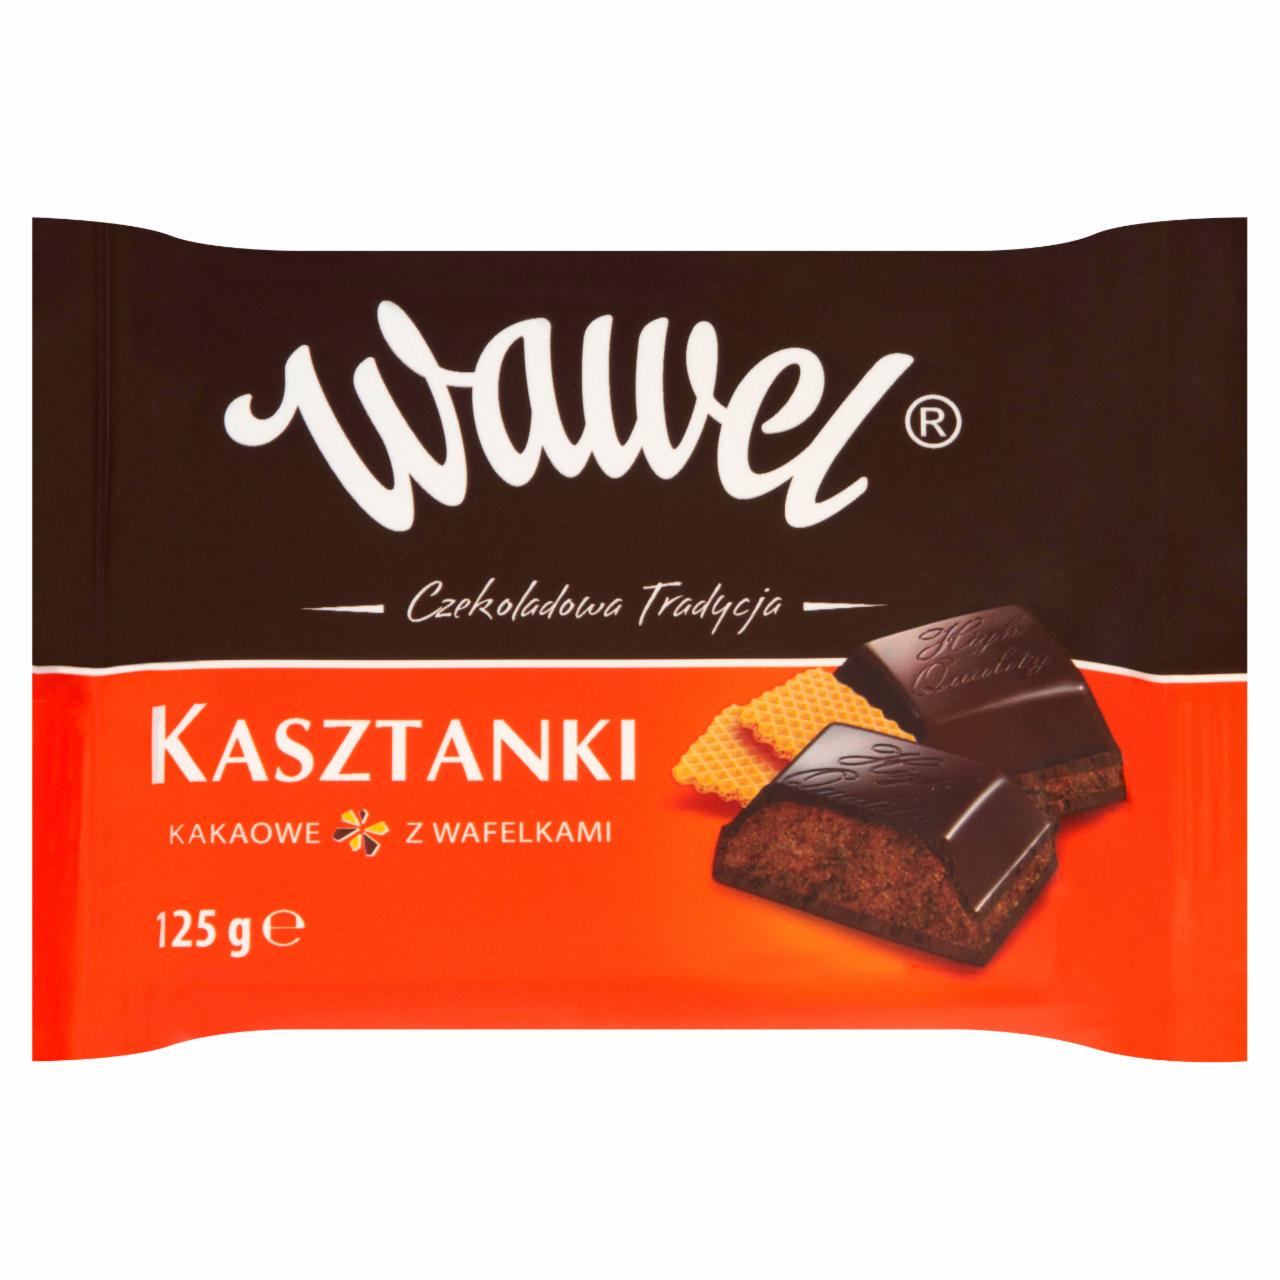 Zdjęcia - Wawel Kasztanki kakaowe z wafelkami Czekolada nadziewana 125 g